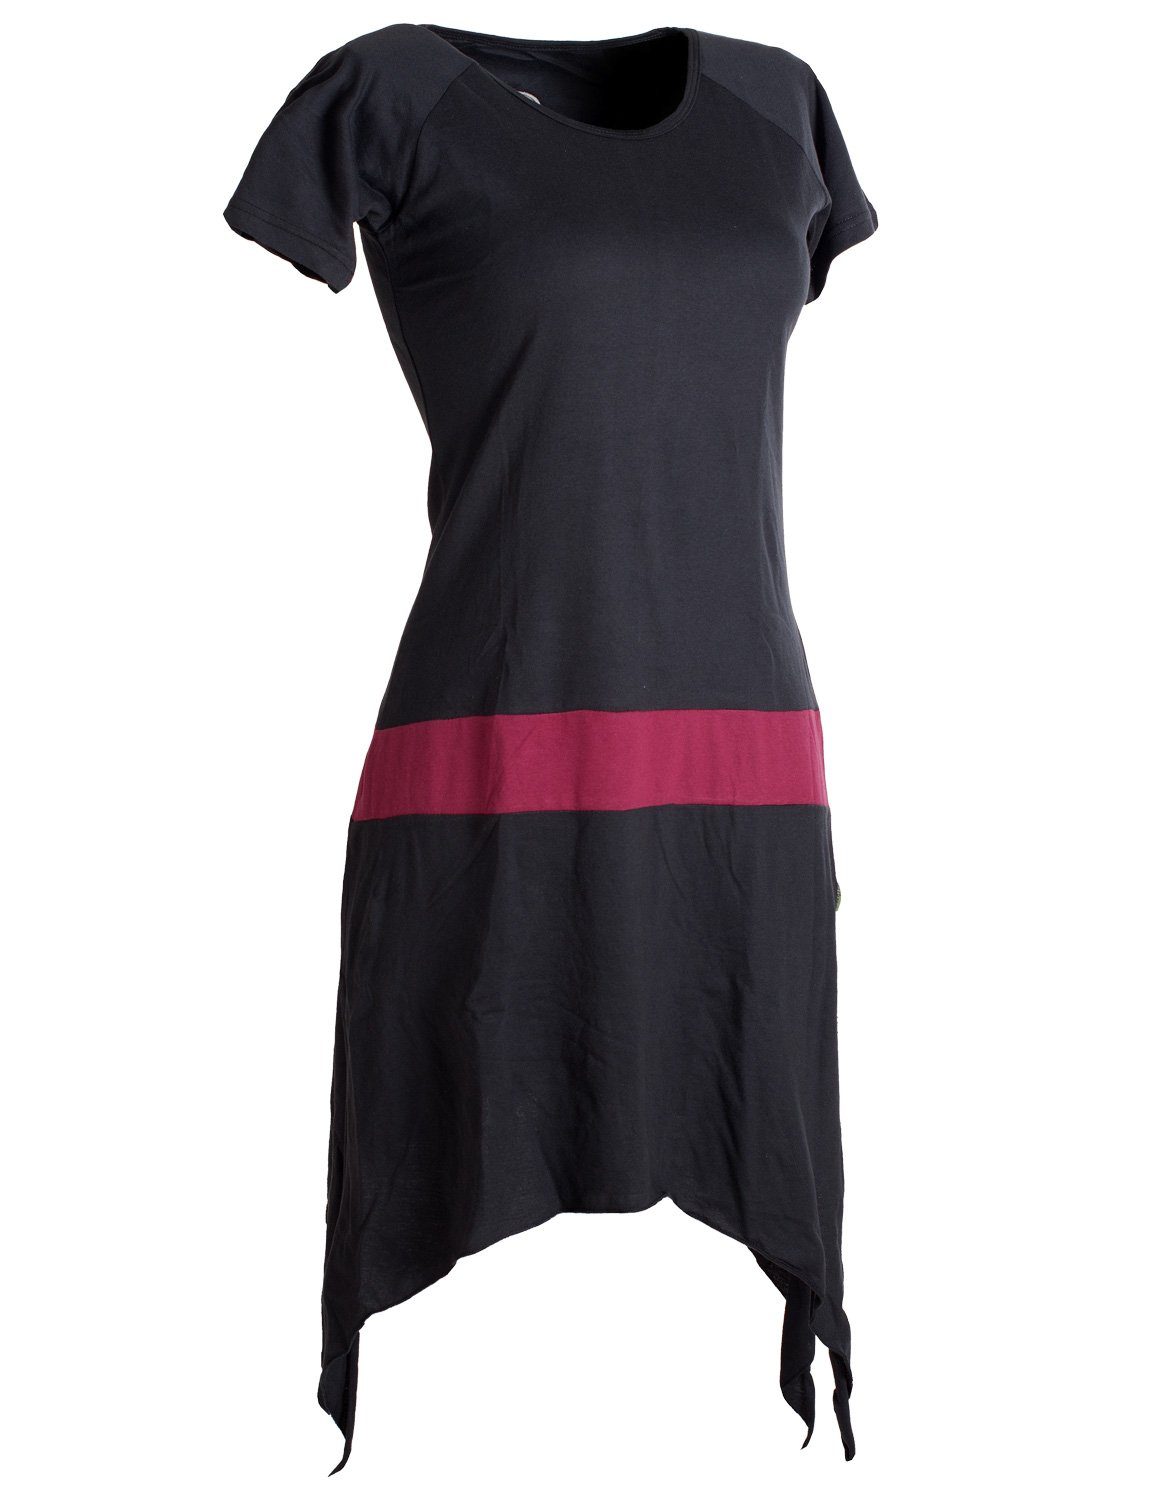 Einfaches Baumwolle aus Zipfelkleid Style kurzärmliges Tunika, Sommerkleid Vishes schwarz-dunkelrot Longshirt, Hippie